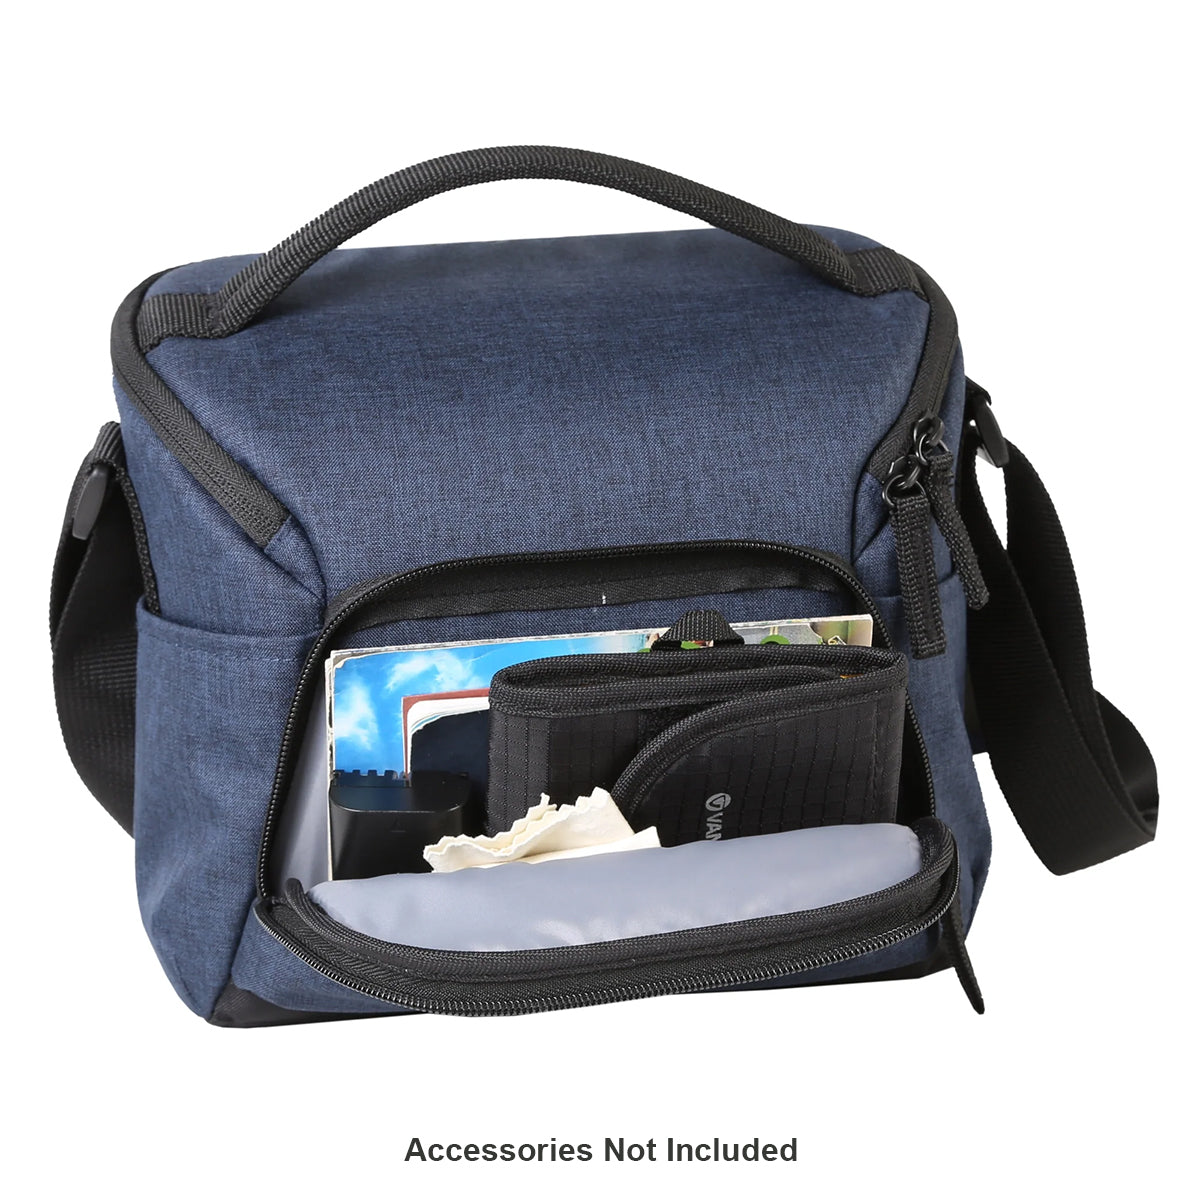 Vanguard Vesta Aspire 21 NV Modern, Compact, Lightweight Shoulder Bag - Blue